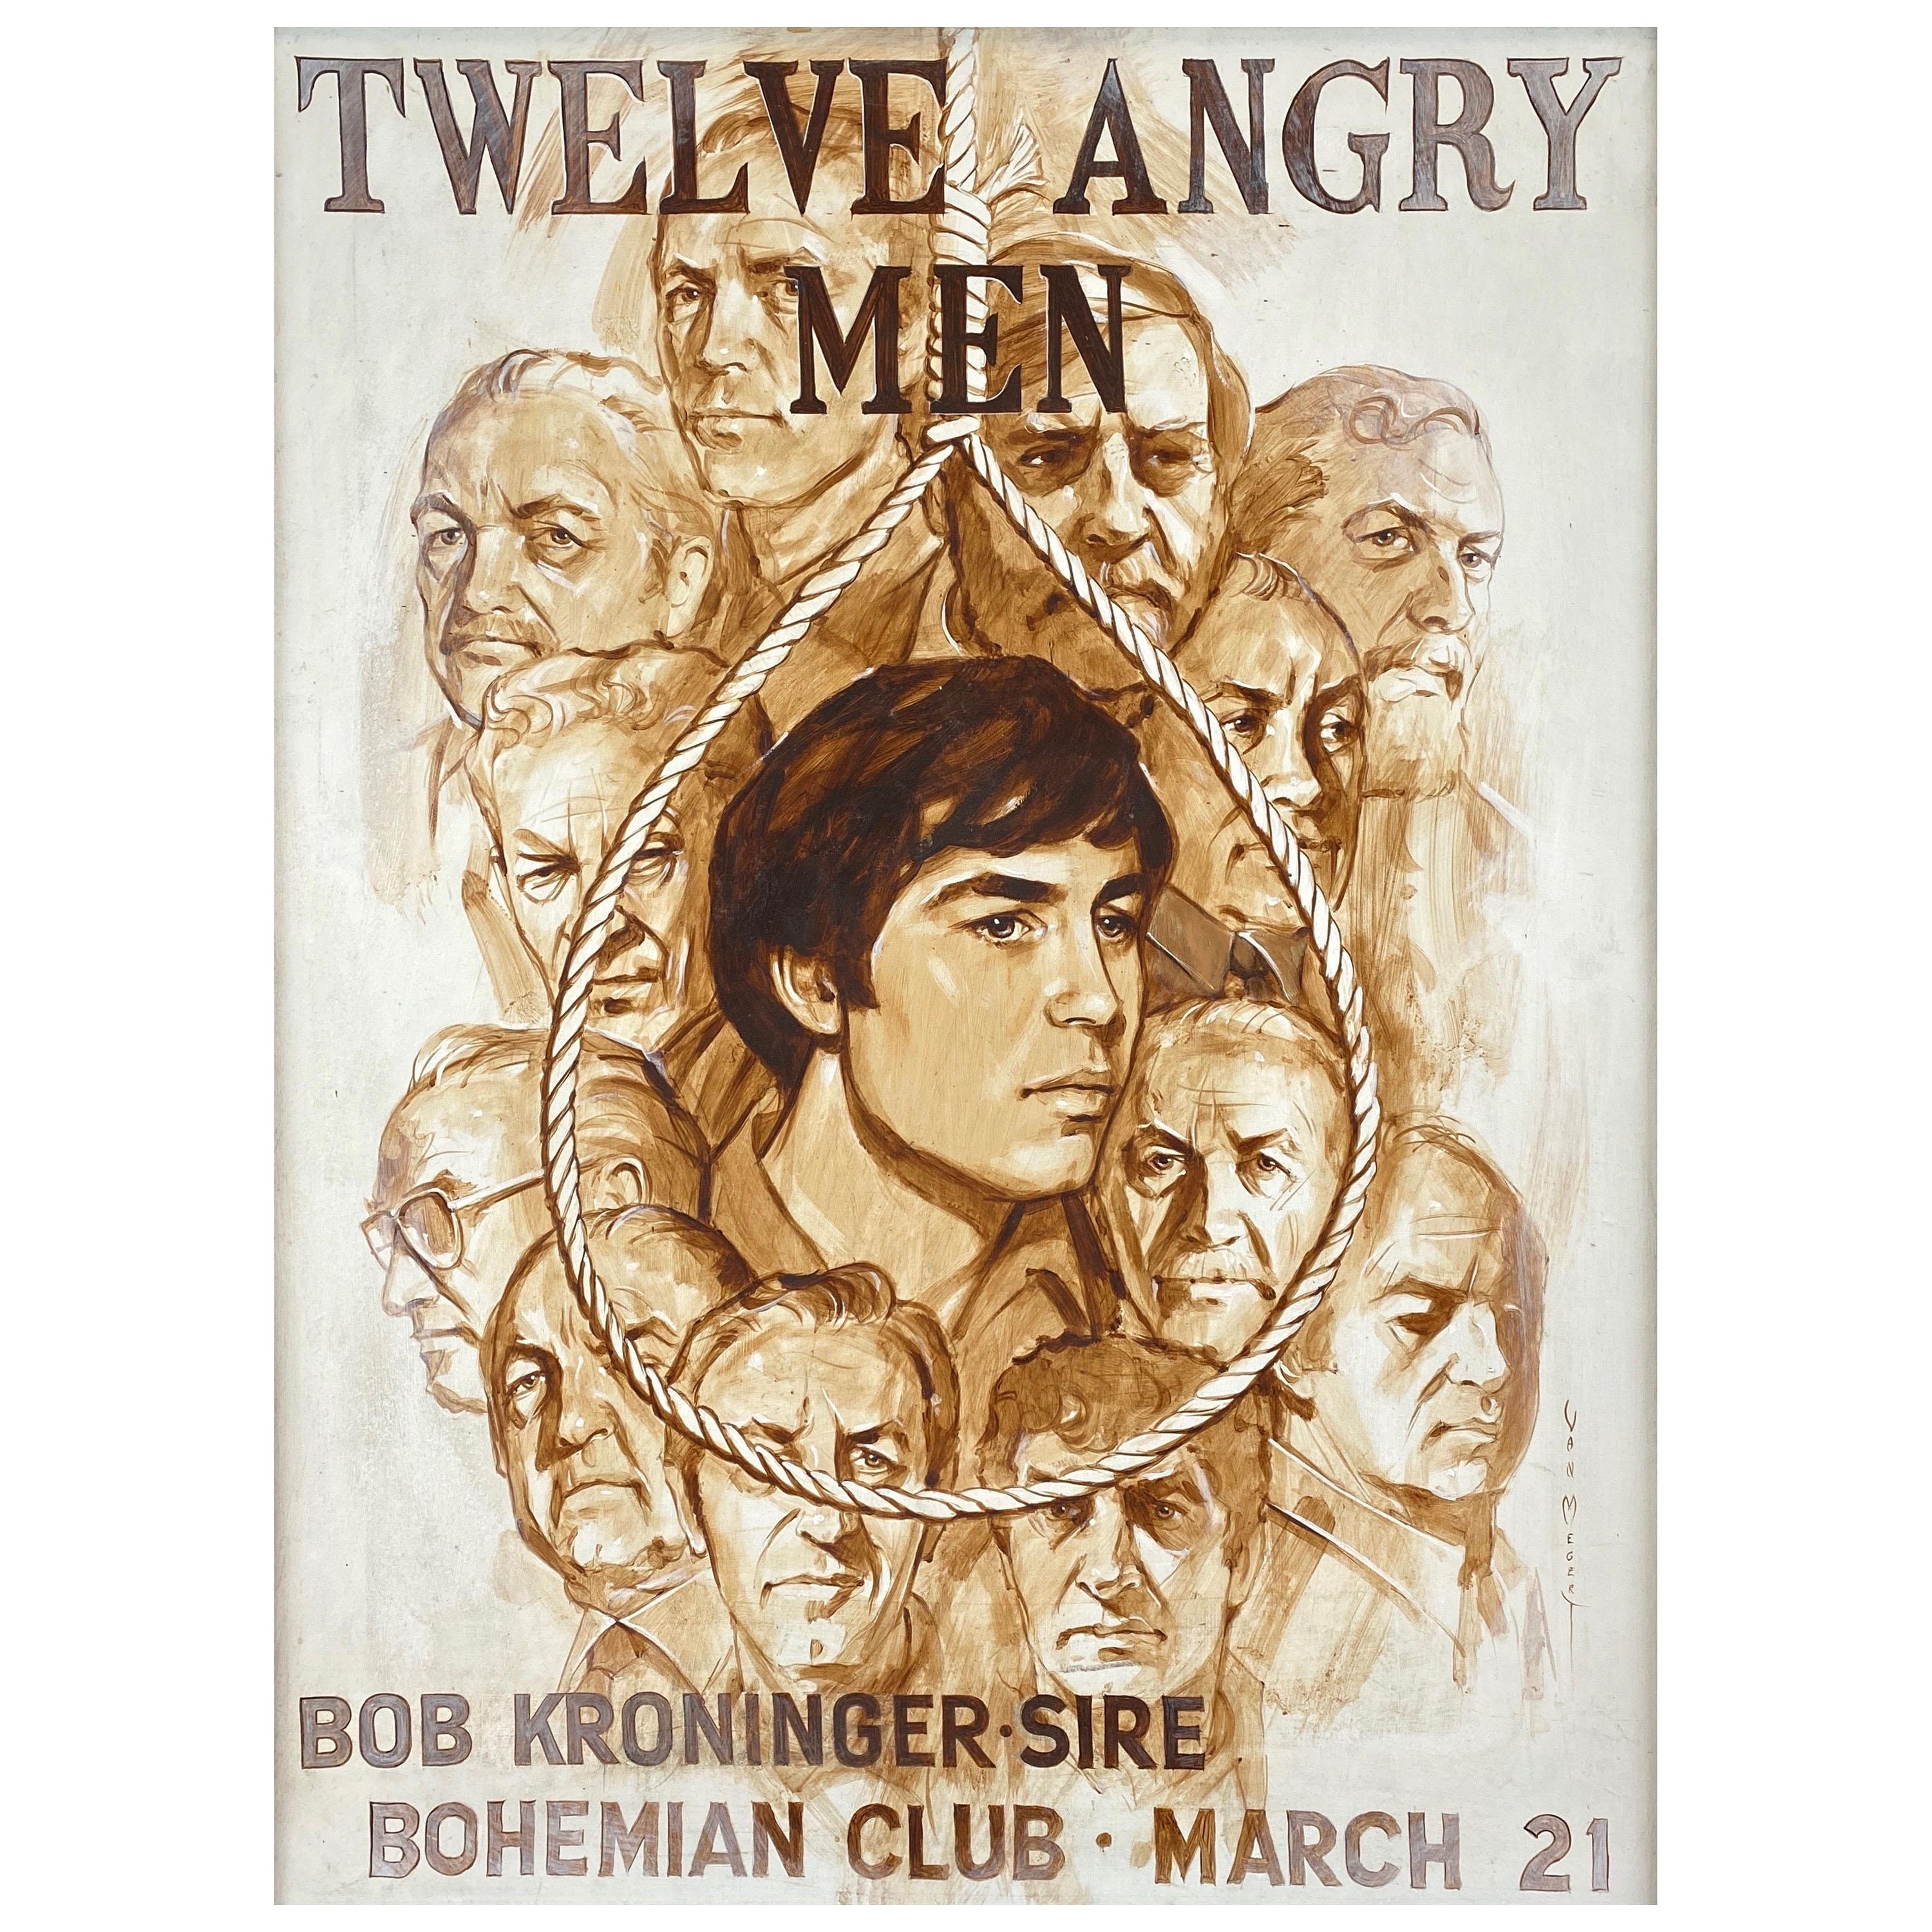 Large Bohemian Club “Twelve Angry Men” Promo Painting by Van Megert, c. 1960